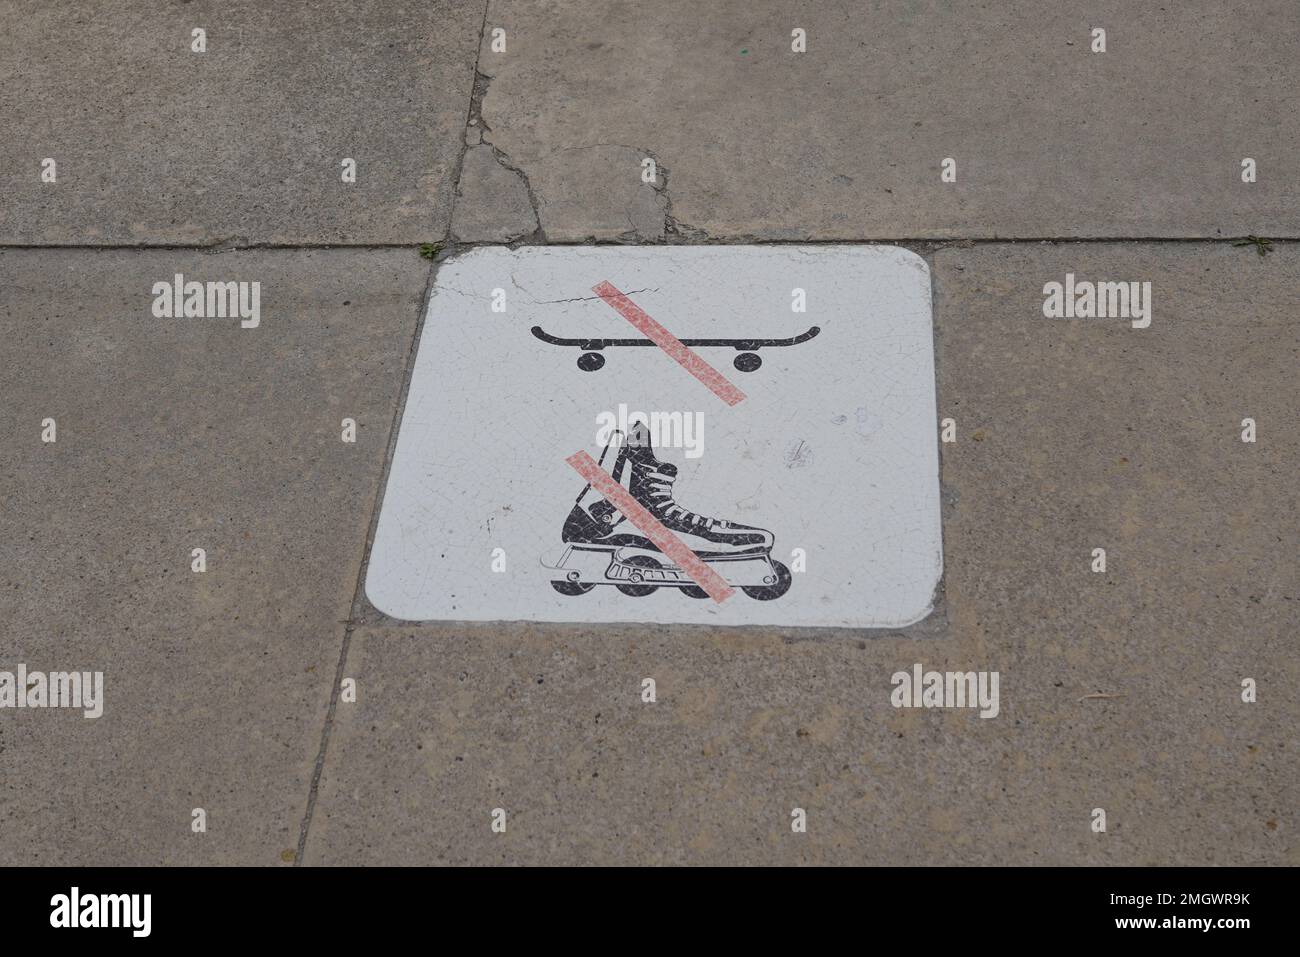 Kein Rollschuhlaufen und Skateboarden rotes Verbotsschild auf dem Straßenboden bedeutet, dass Skateboard und Rollschuhlaufen nicht erlaubt sind Stockfoto